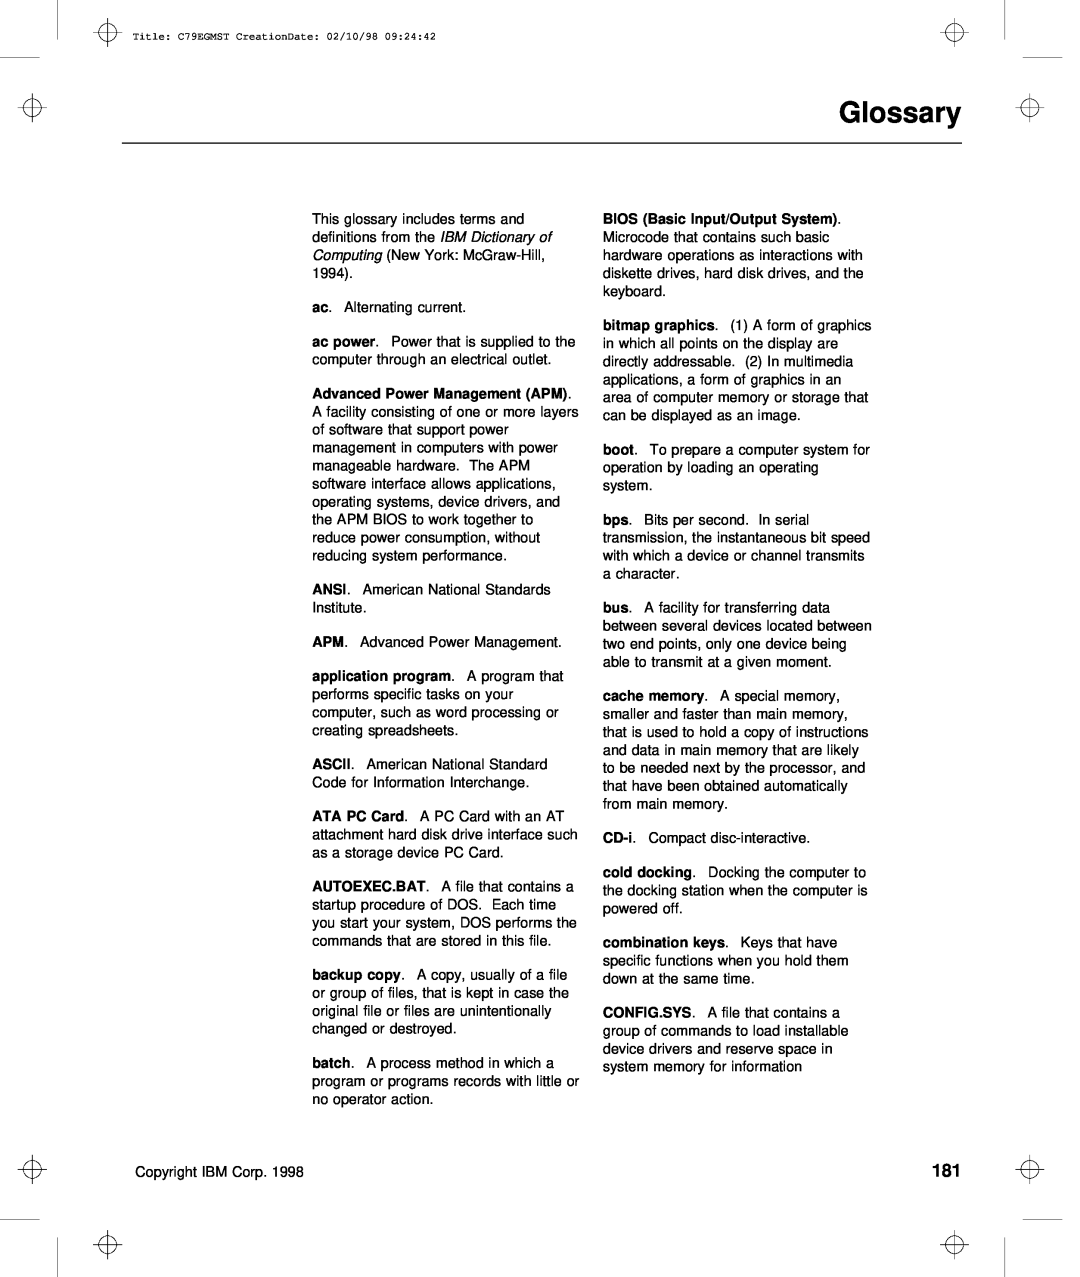 IBM C79EGMST manual Glossary, Ansi, Ascii, CD-i, keys, batch 